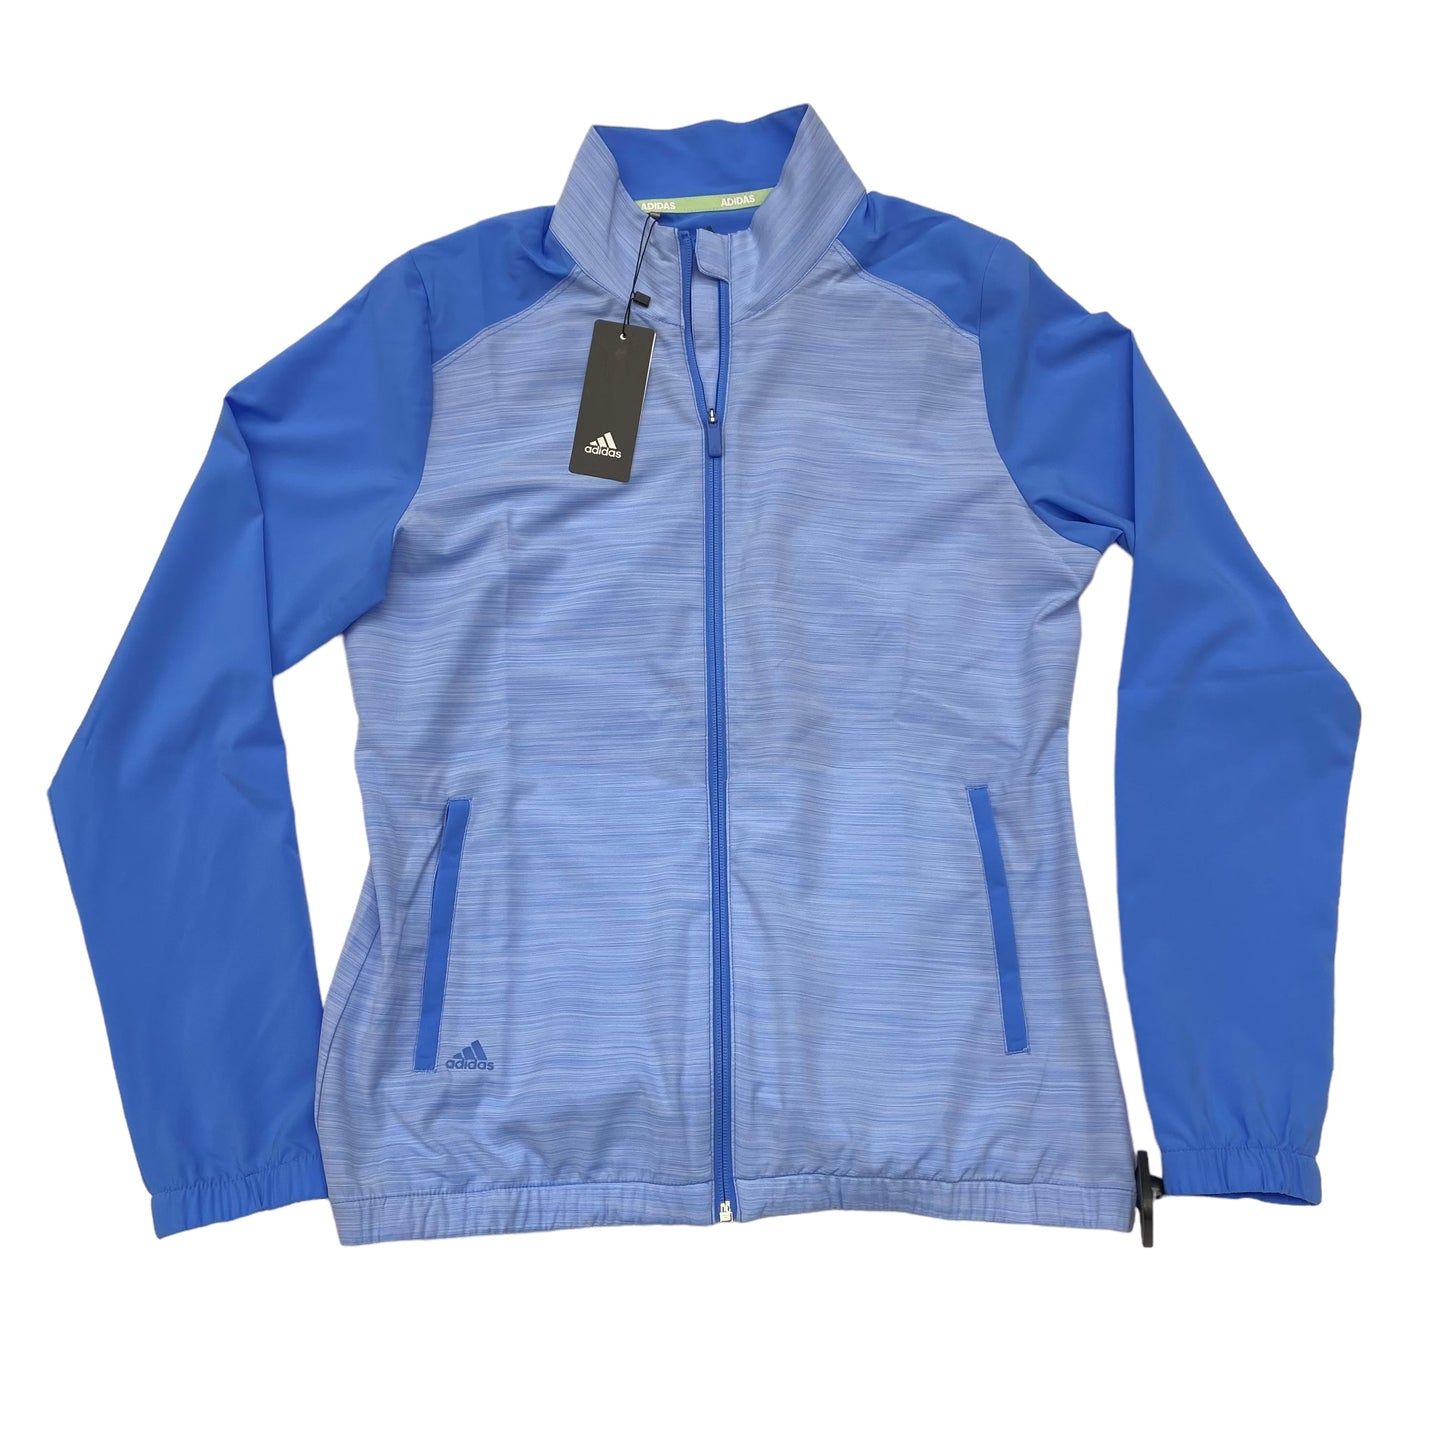 Blue Athletic Jacket Adidas, Size M